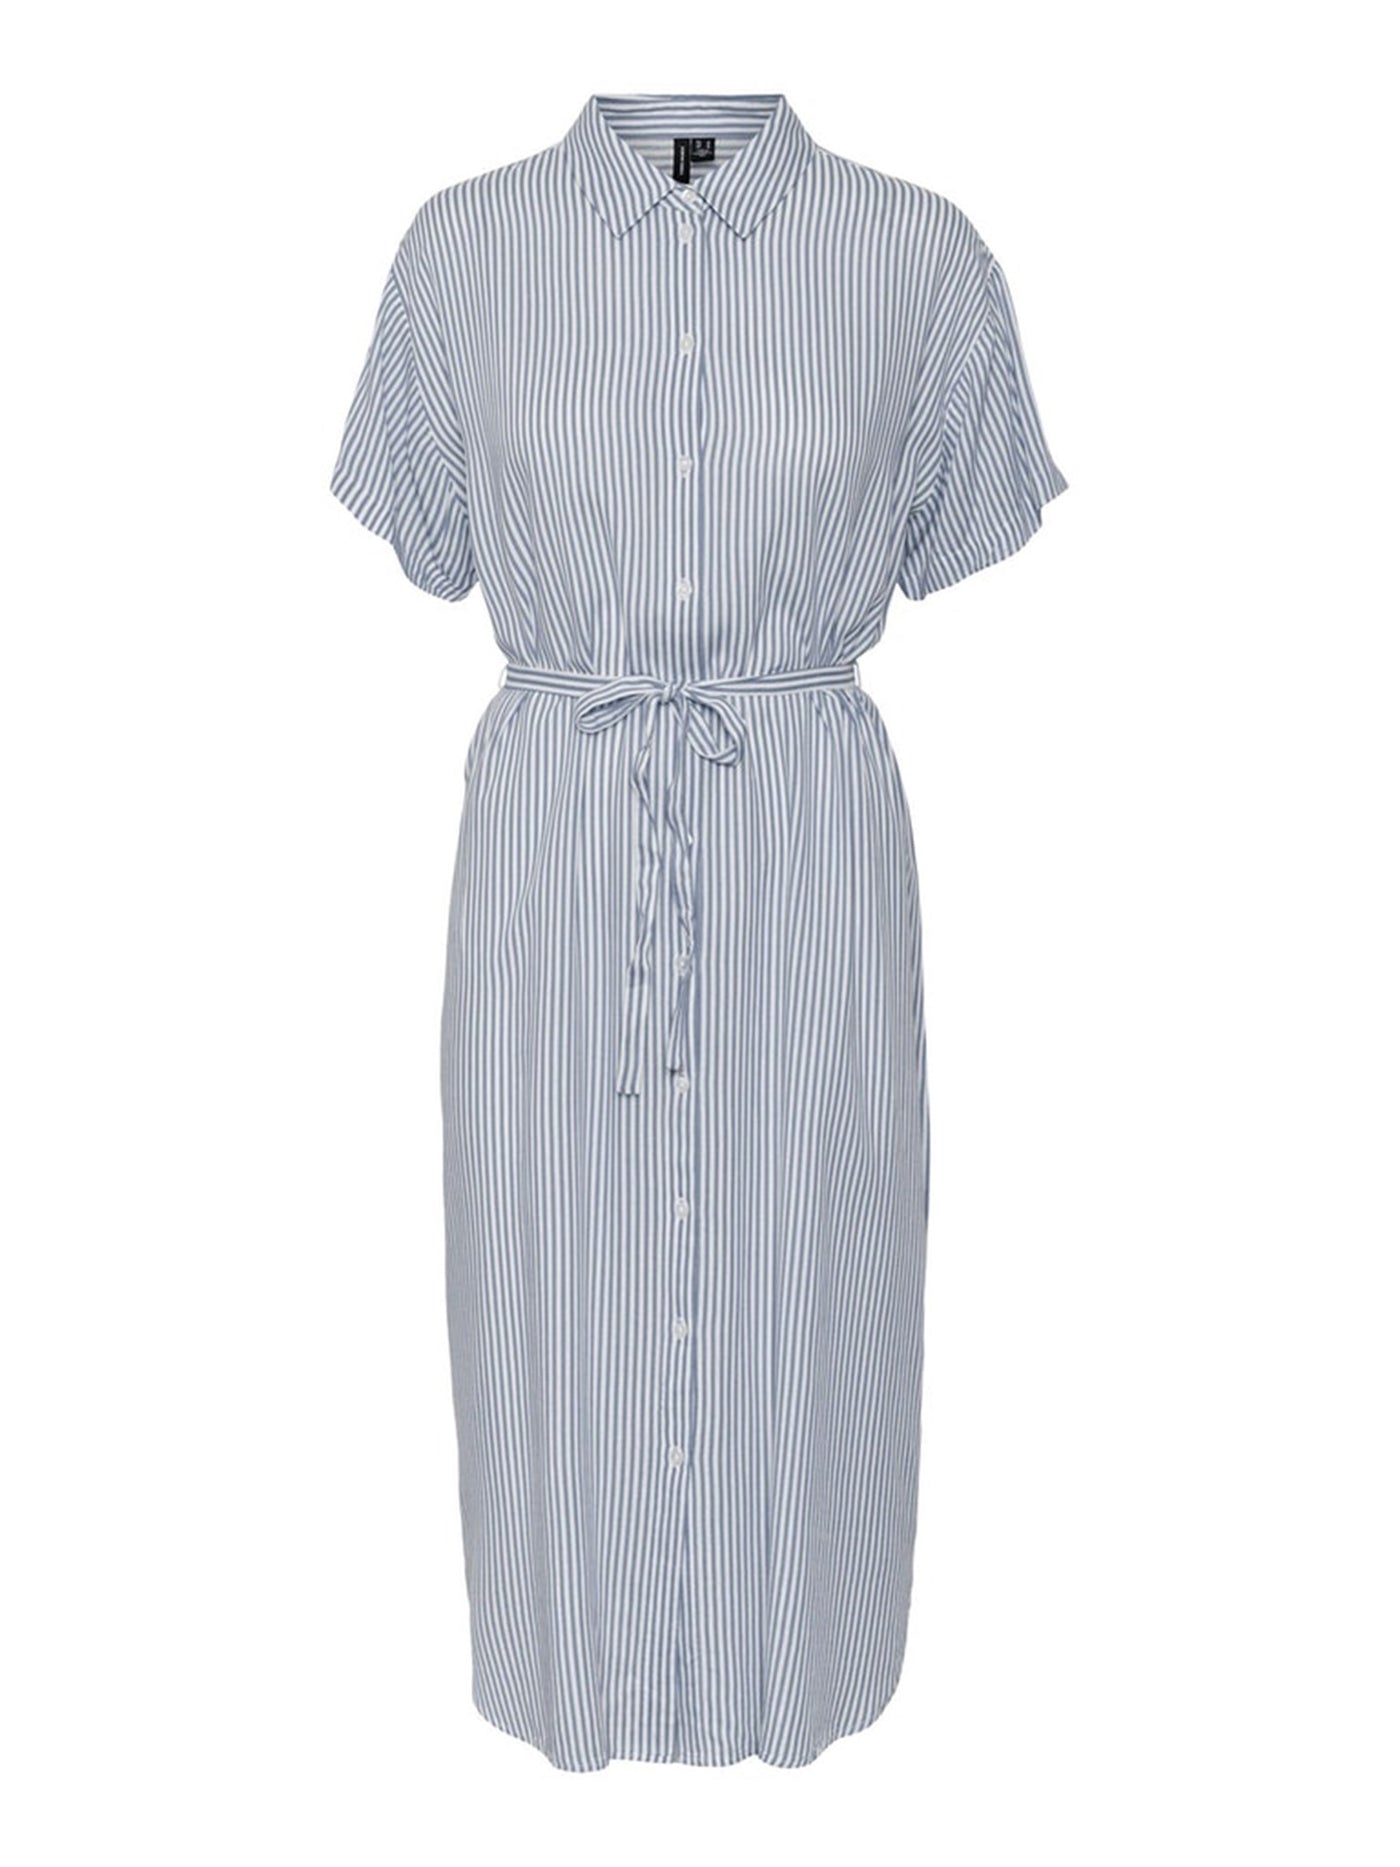 Bumpy Striped Maxi Dress - India Ink - Vero Moda - White